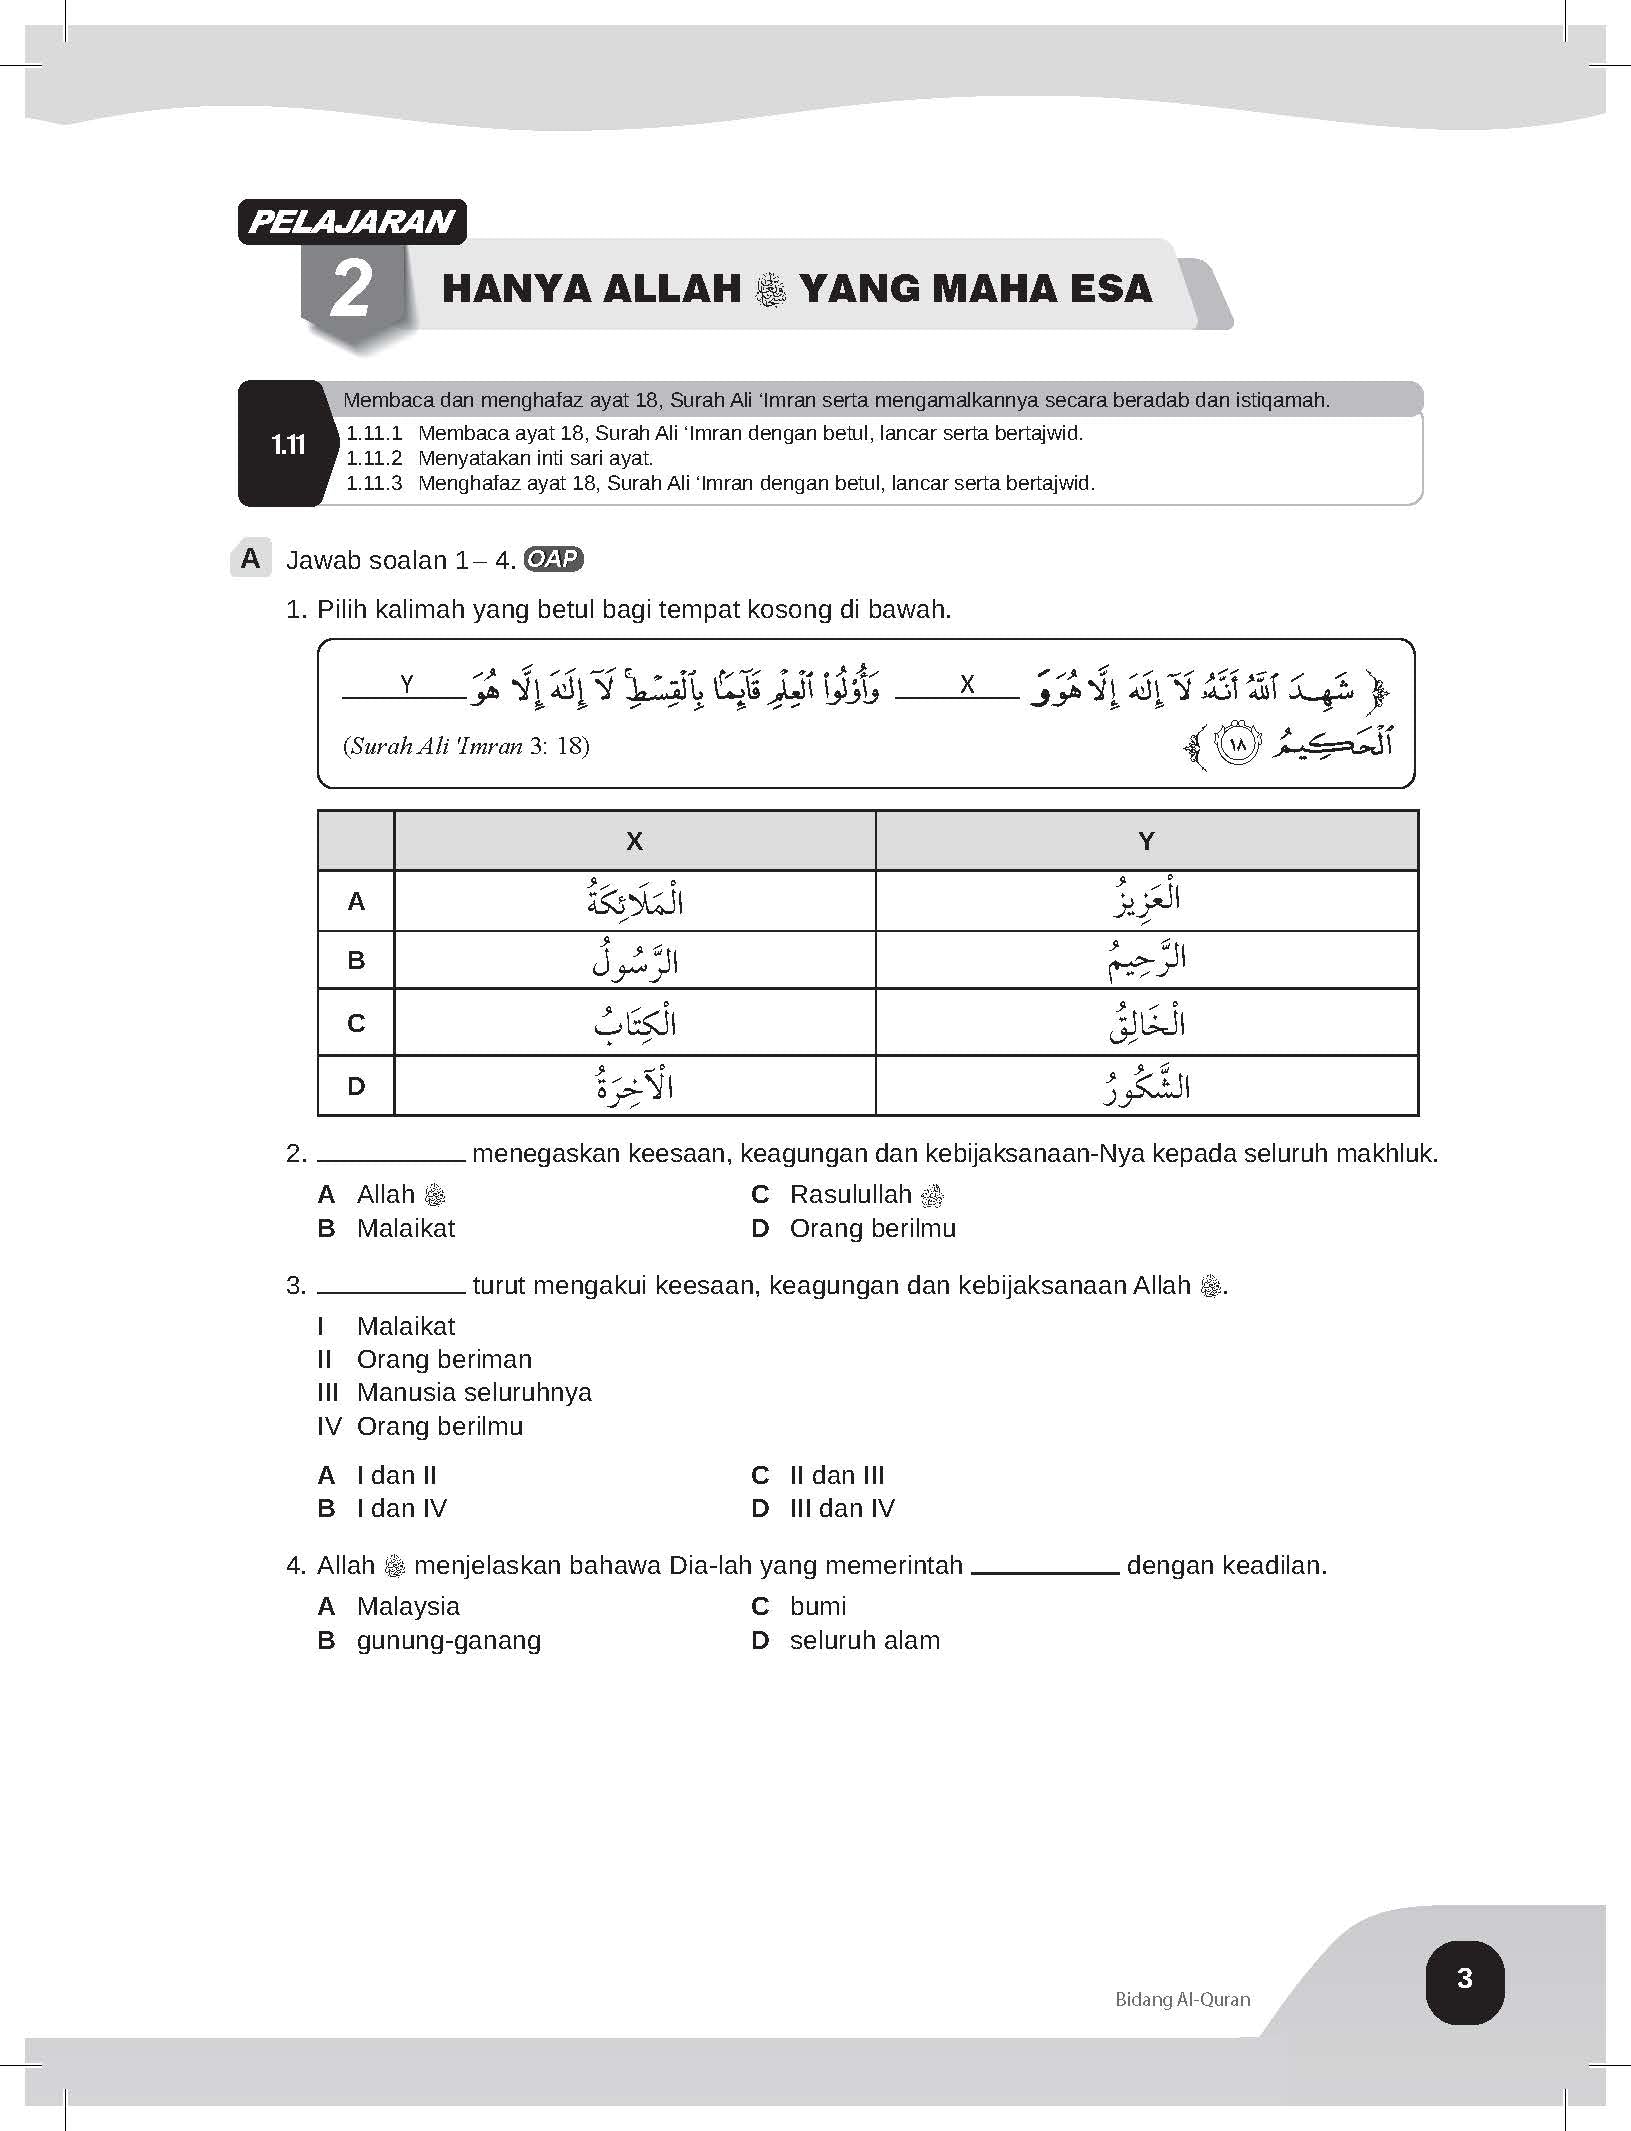 Speed Score A+ Latihan Topikal Pendidikan Islam Tingkatan 2 - (TBBS1332)